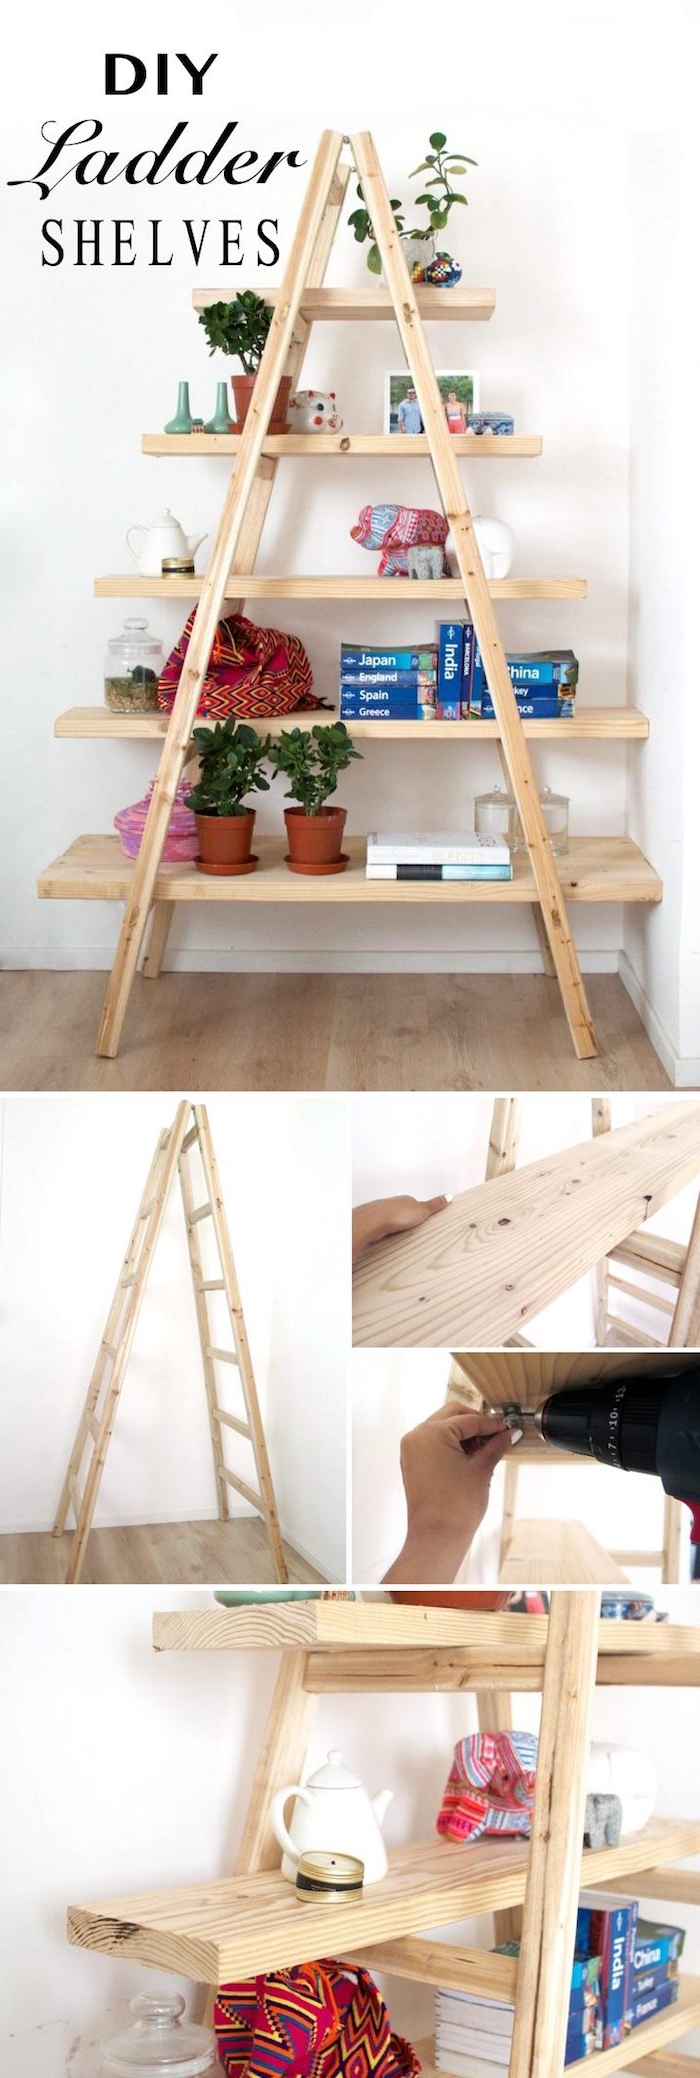 idée comment installer des étagères sur une échelle en bois, tuto technique pour fabriquer une echelle etagere